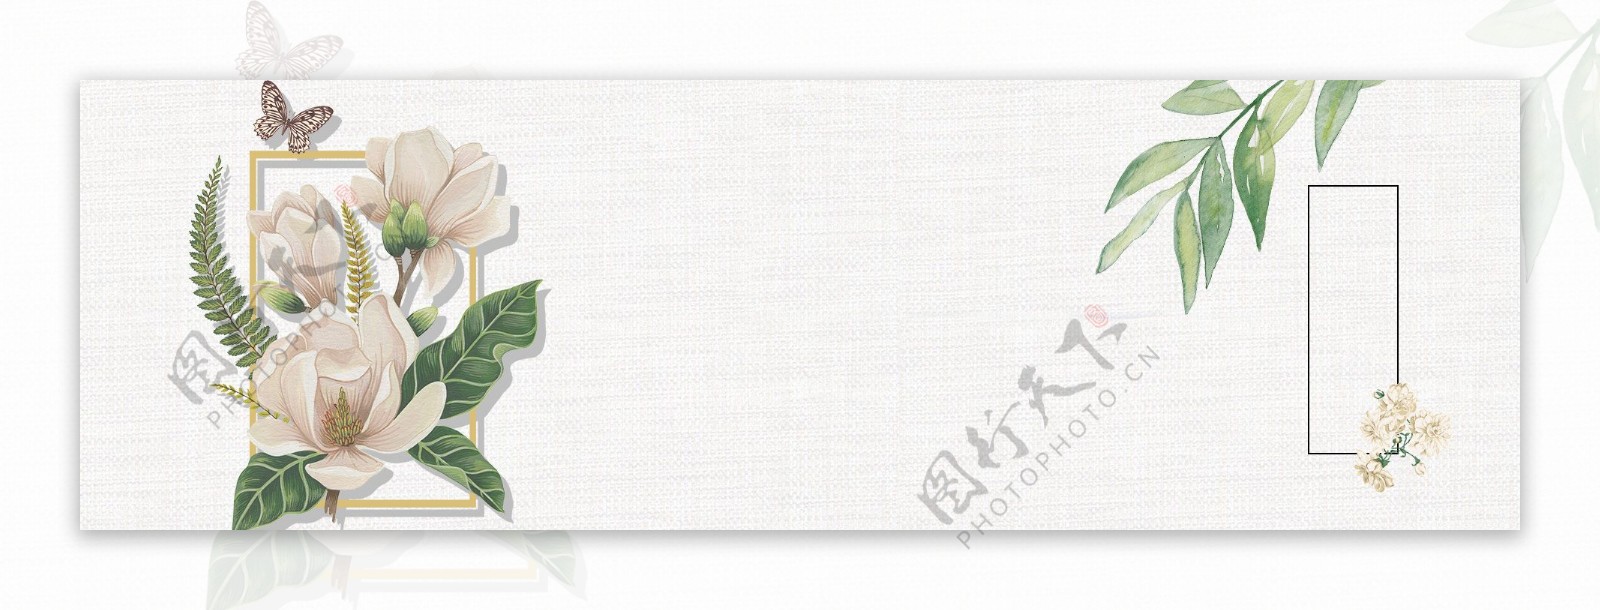 手绘白色花朵banner背景素材